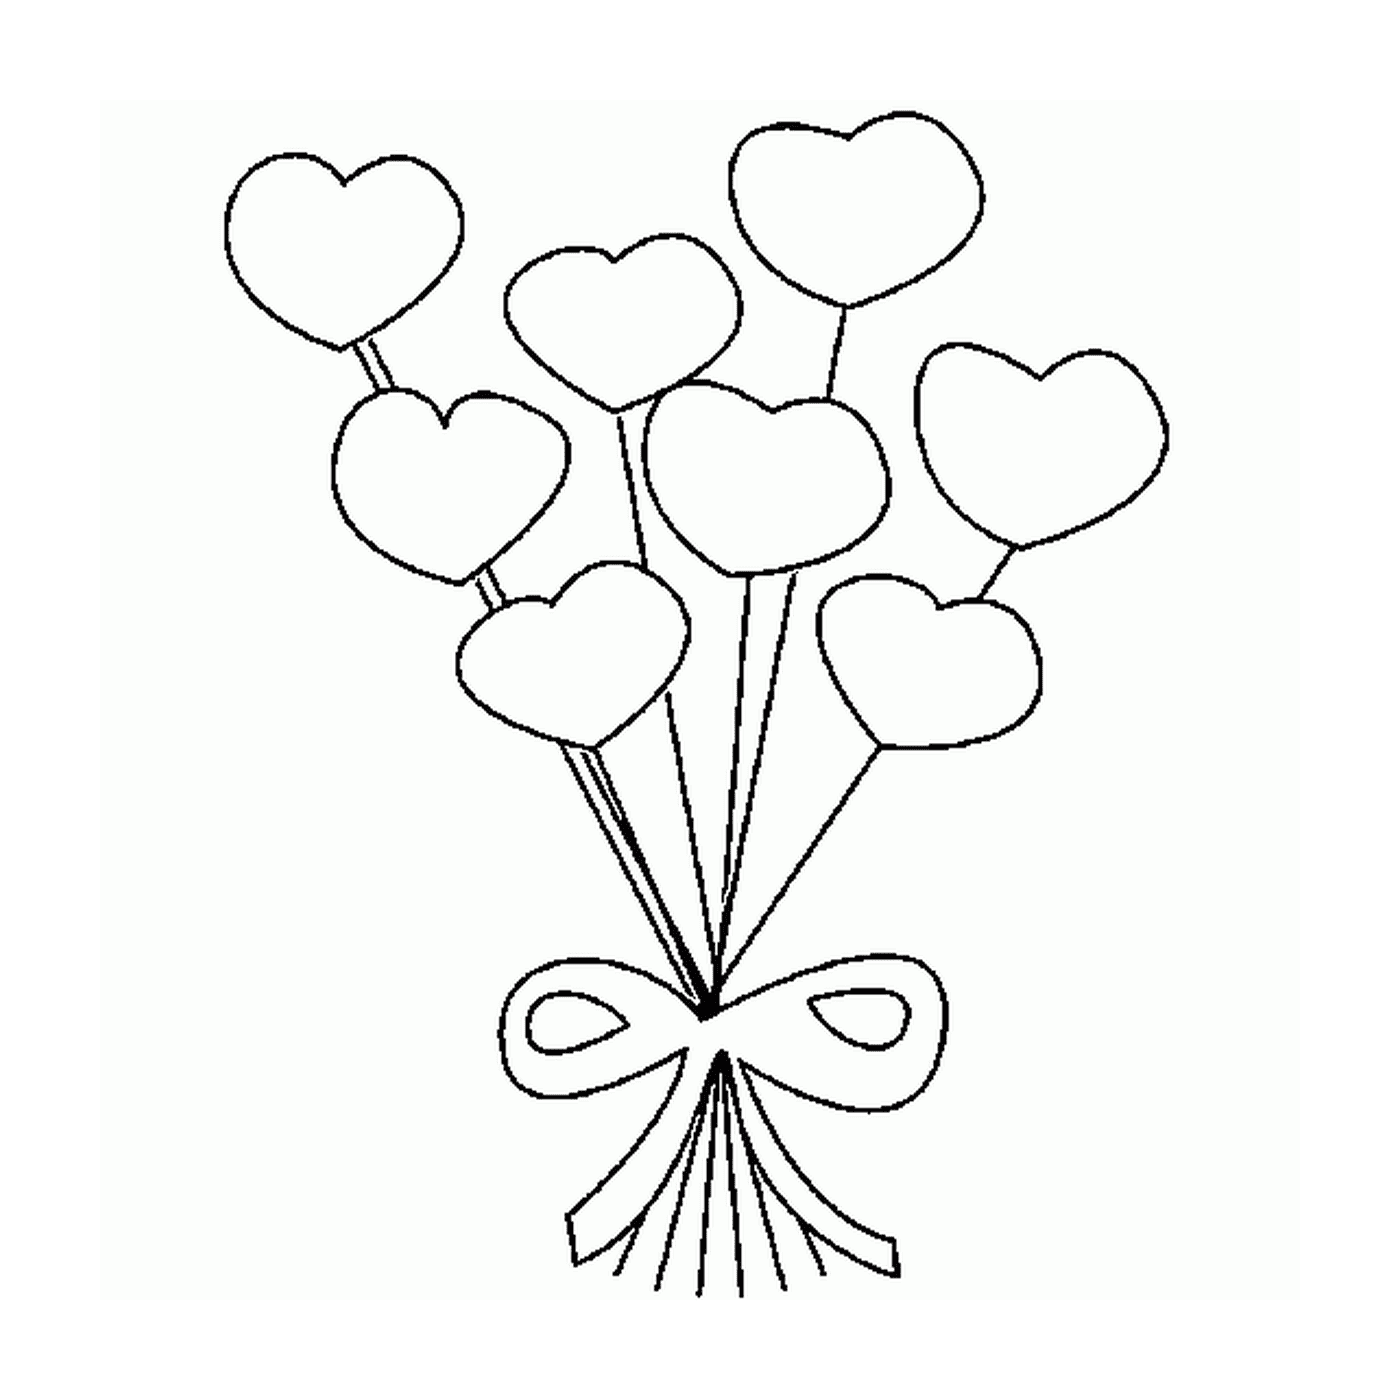  Buquê magnífico de balões em forma de coração 